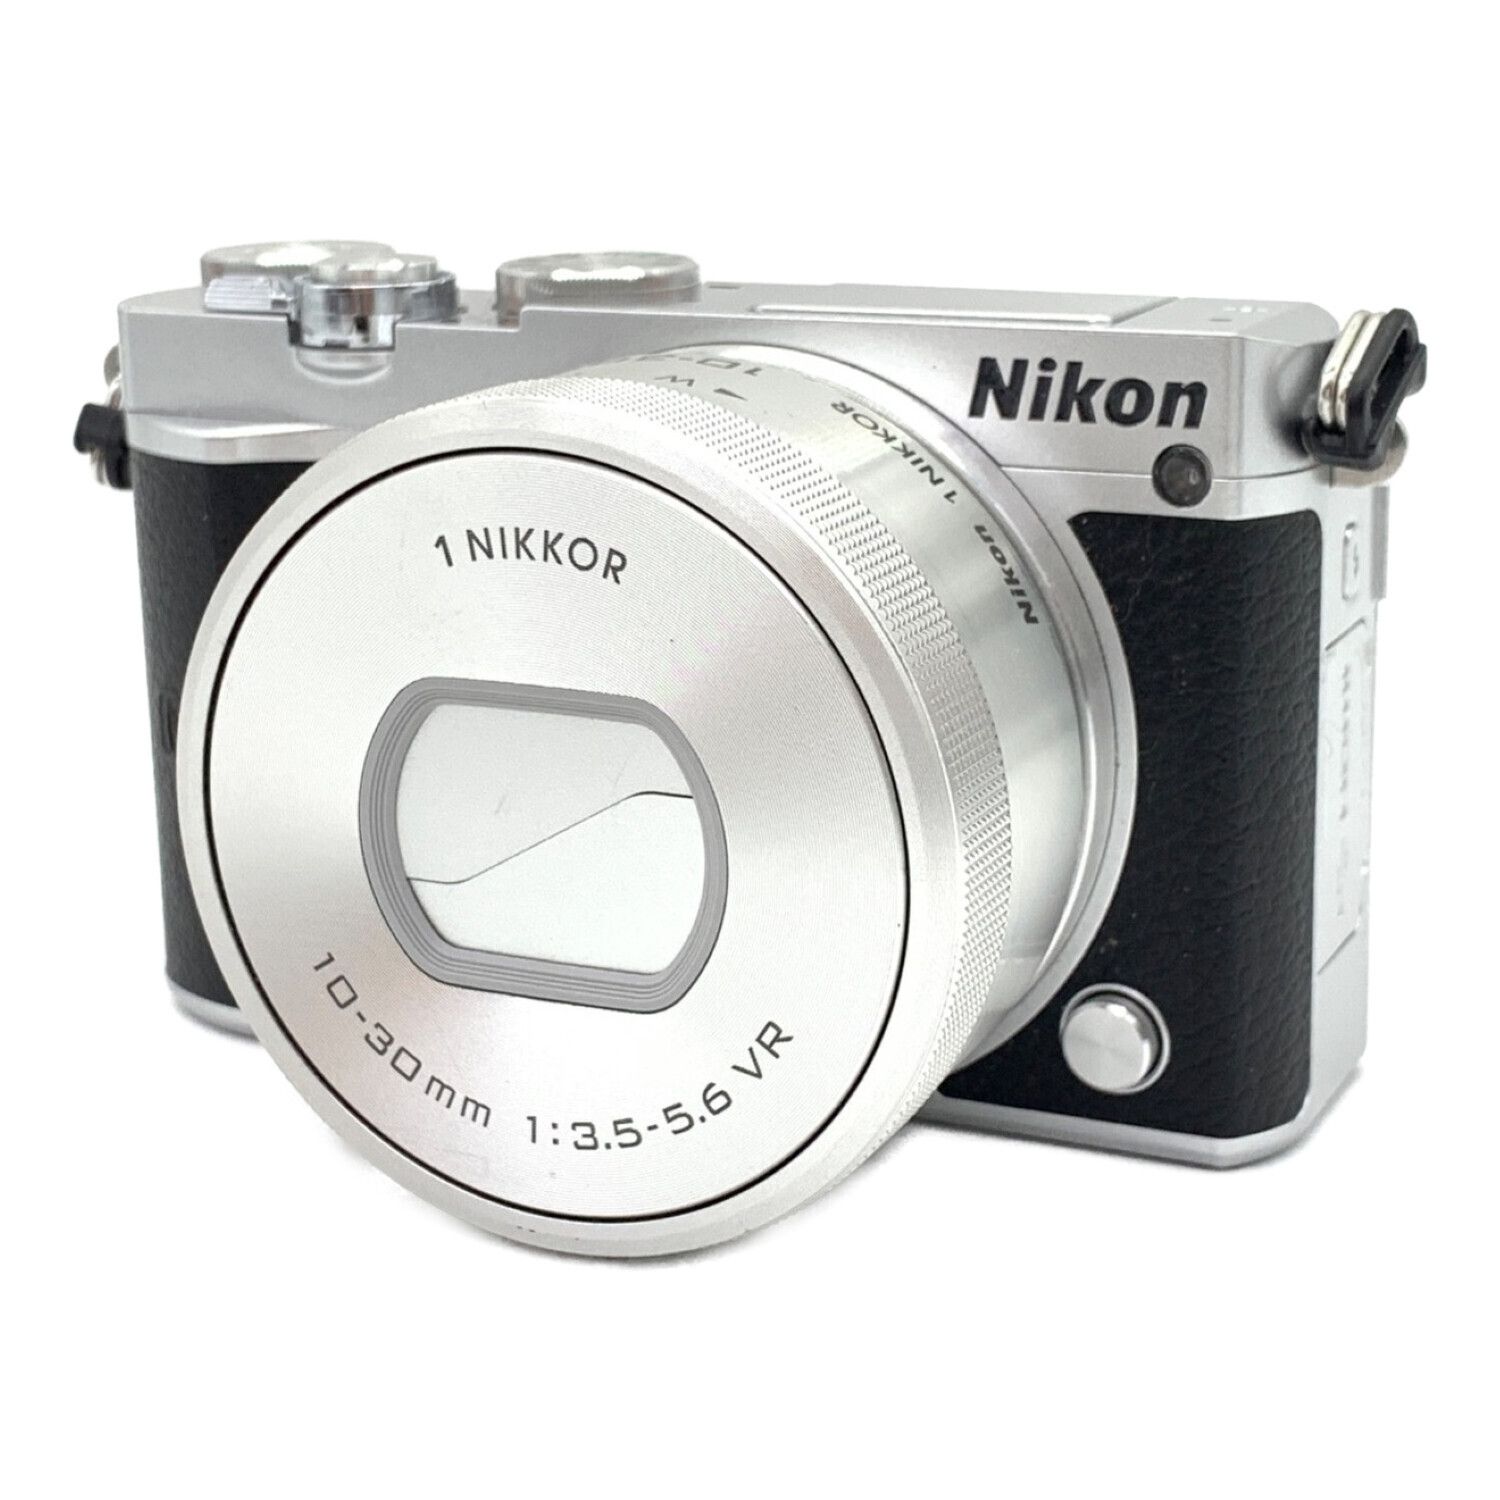 Nikon (ニコン) ミラーレス一眼カメラ パワーズームレンズキット